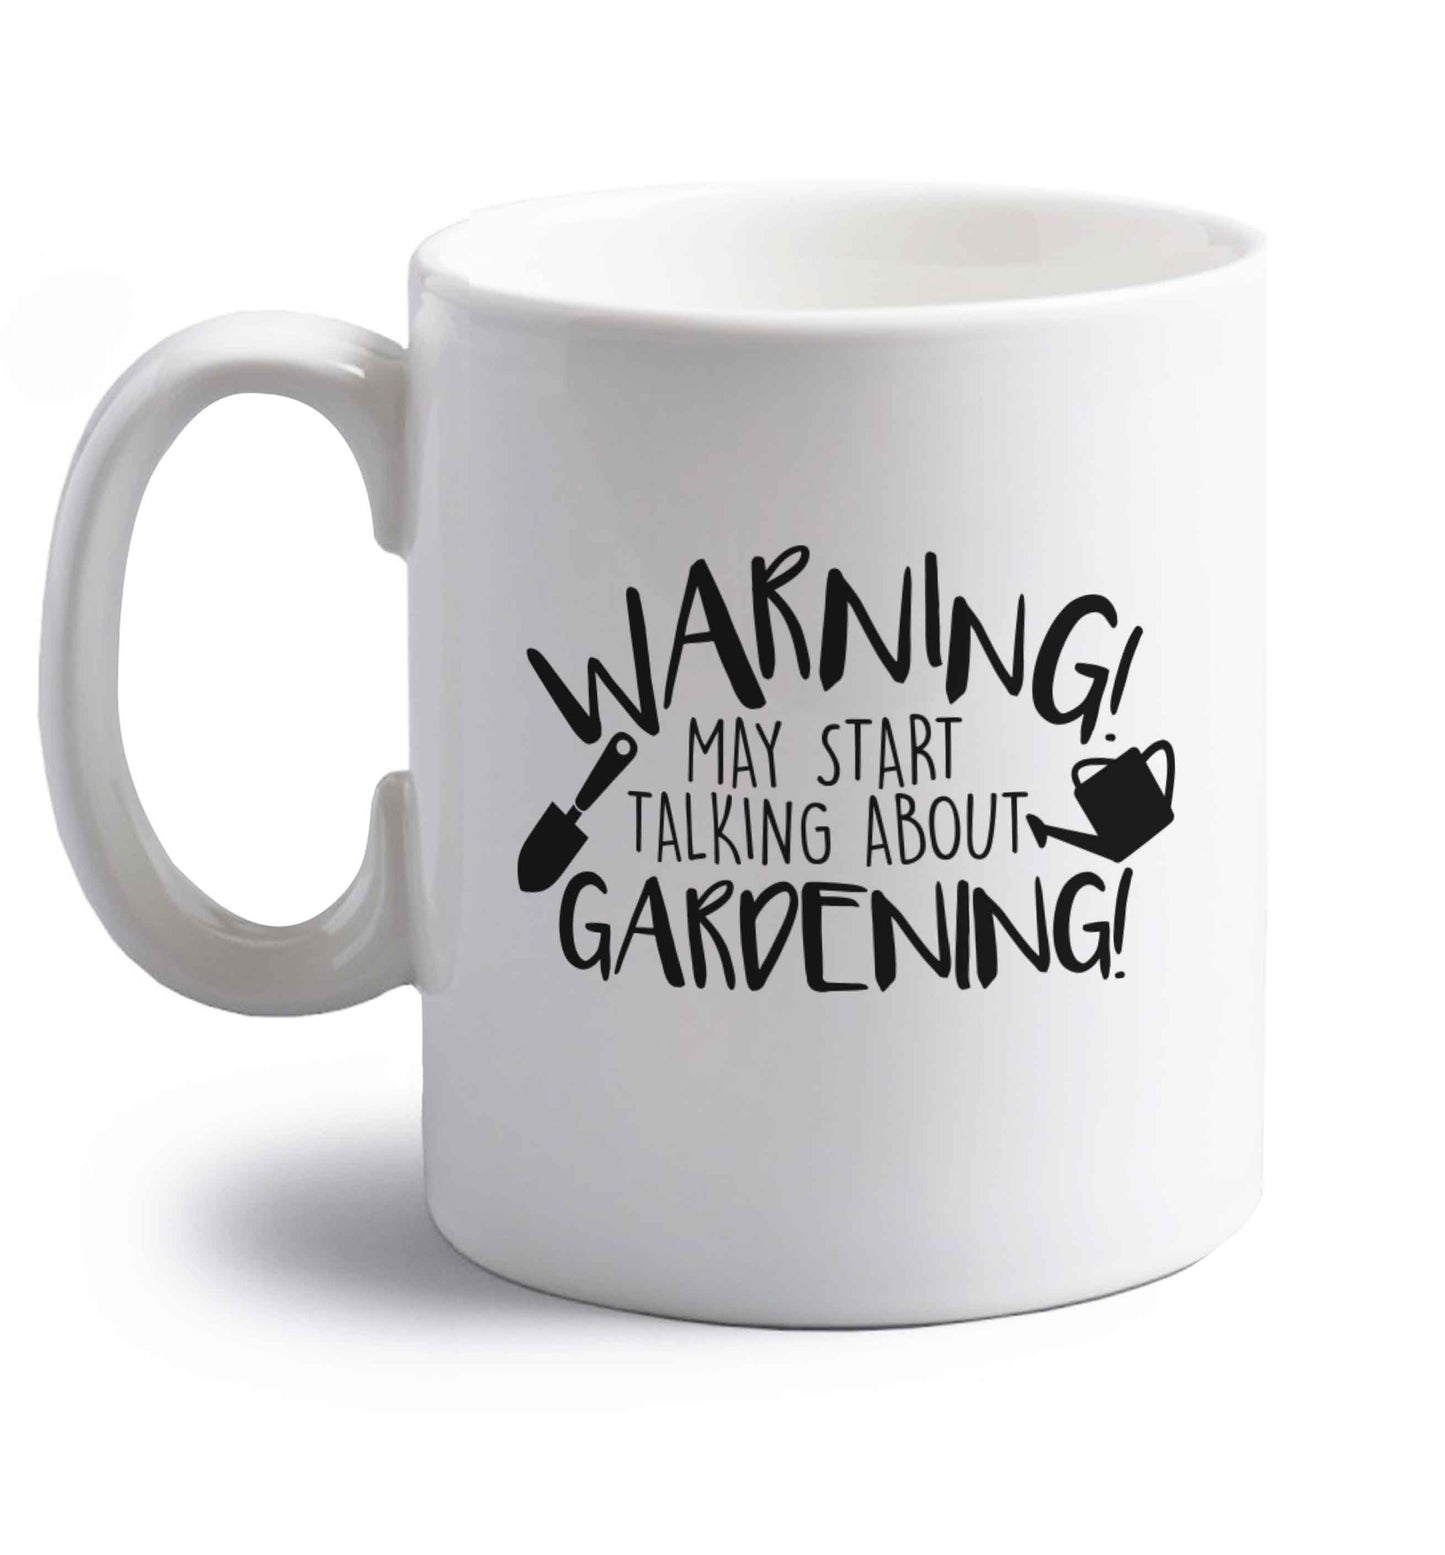 Warning may start talking about gardening right handed white ceramic mug 